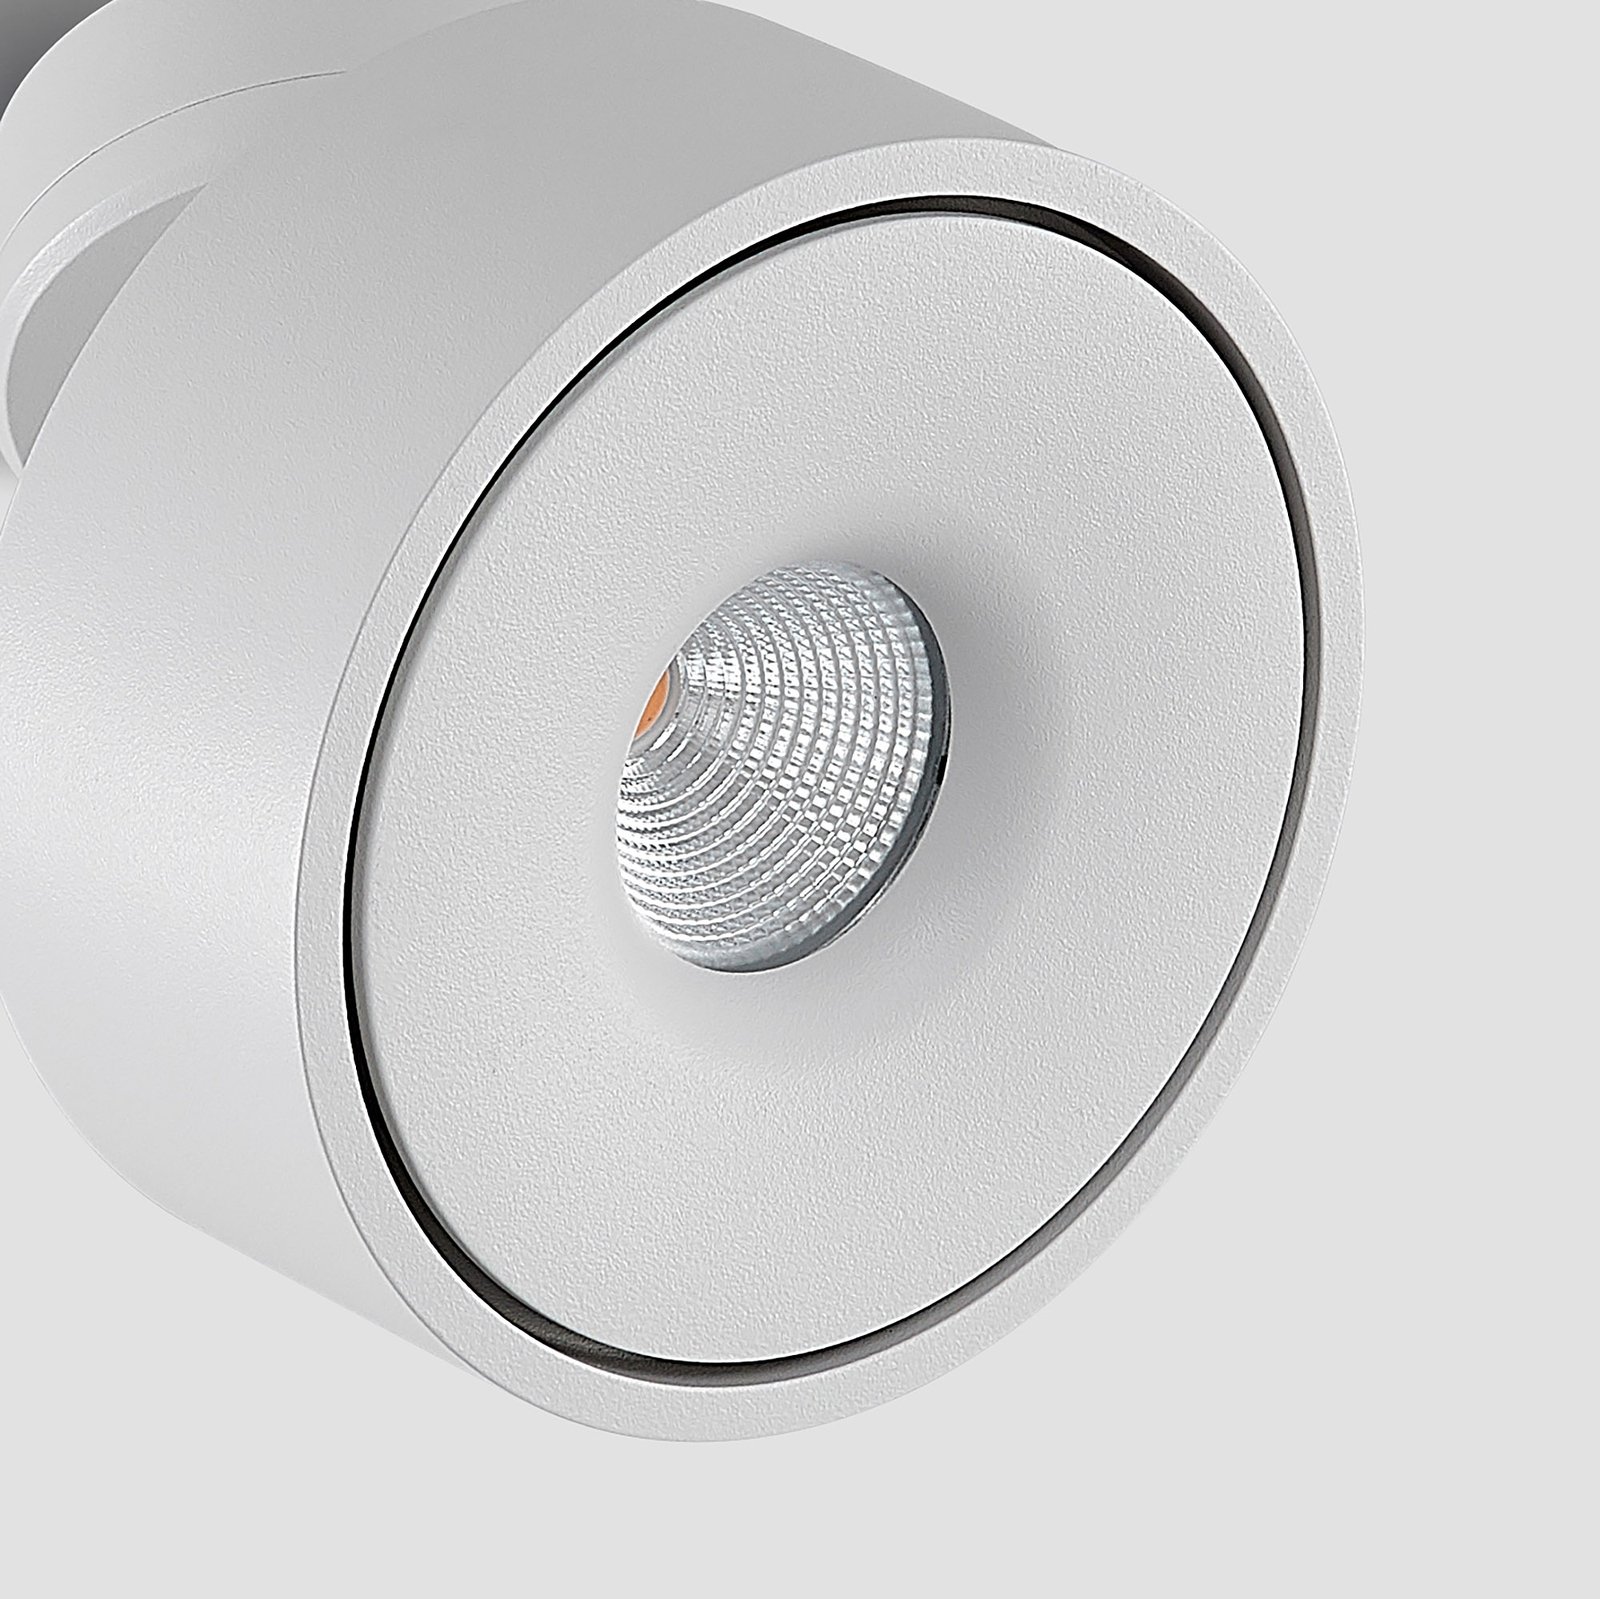 Arcchio Rotari LED-Deckenlampe, weiß, schwenkbar